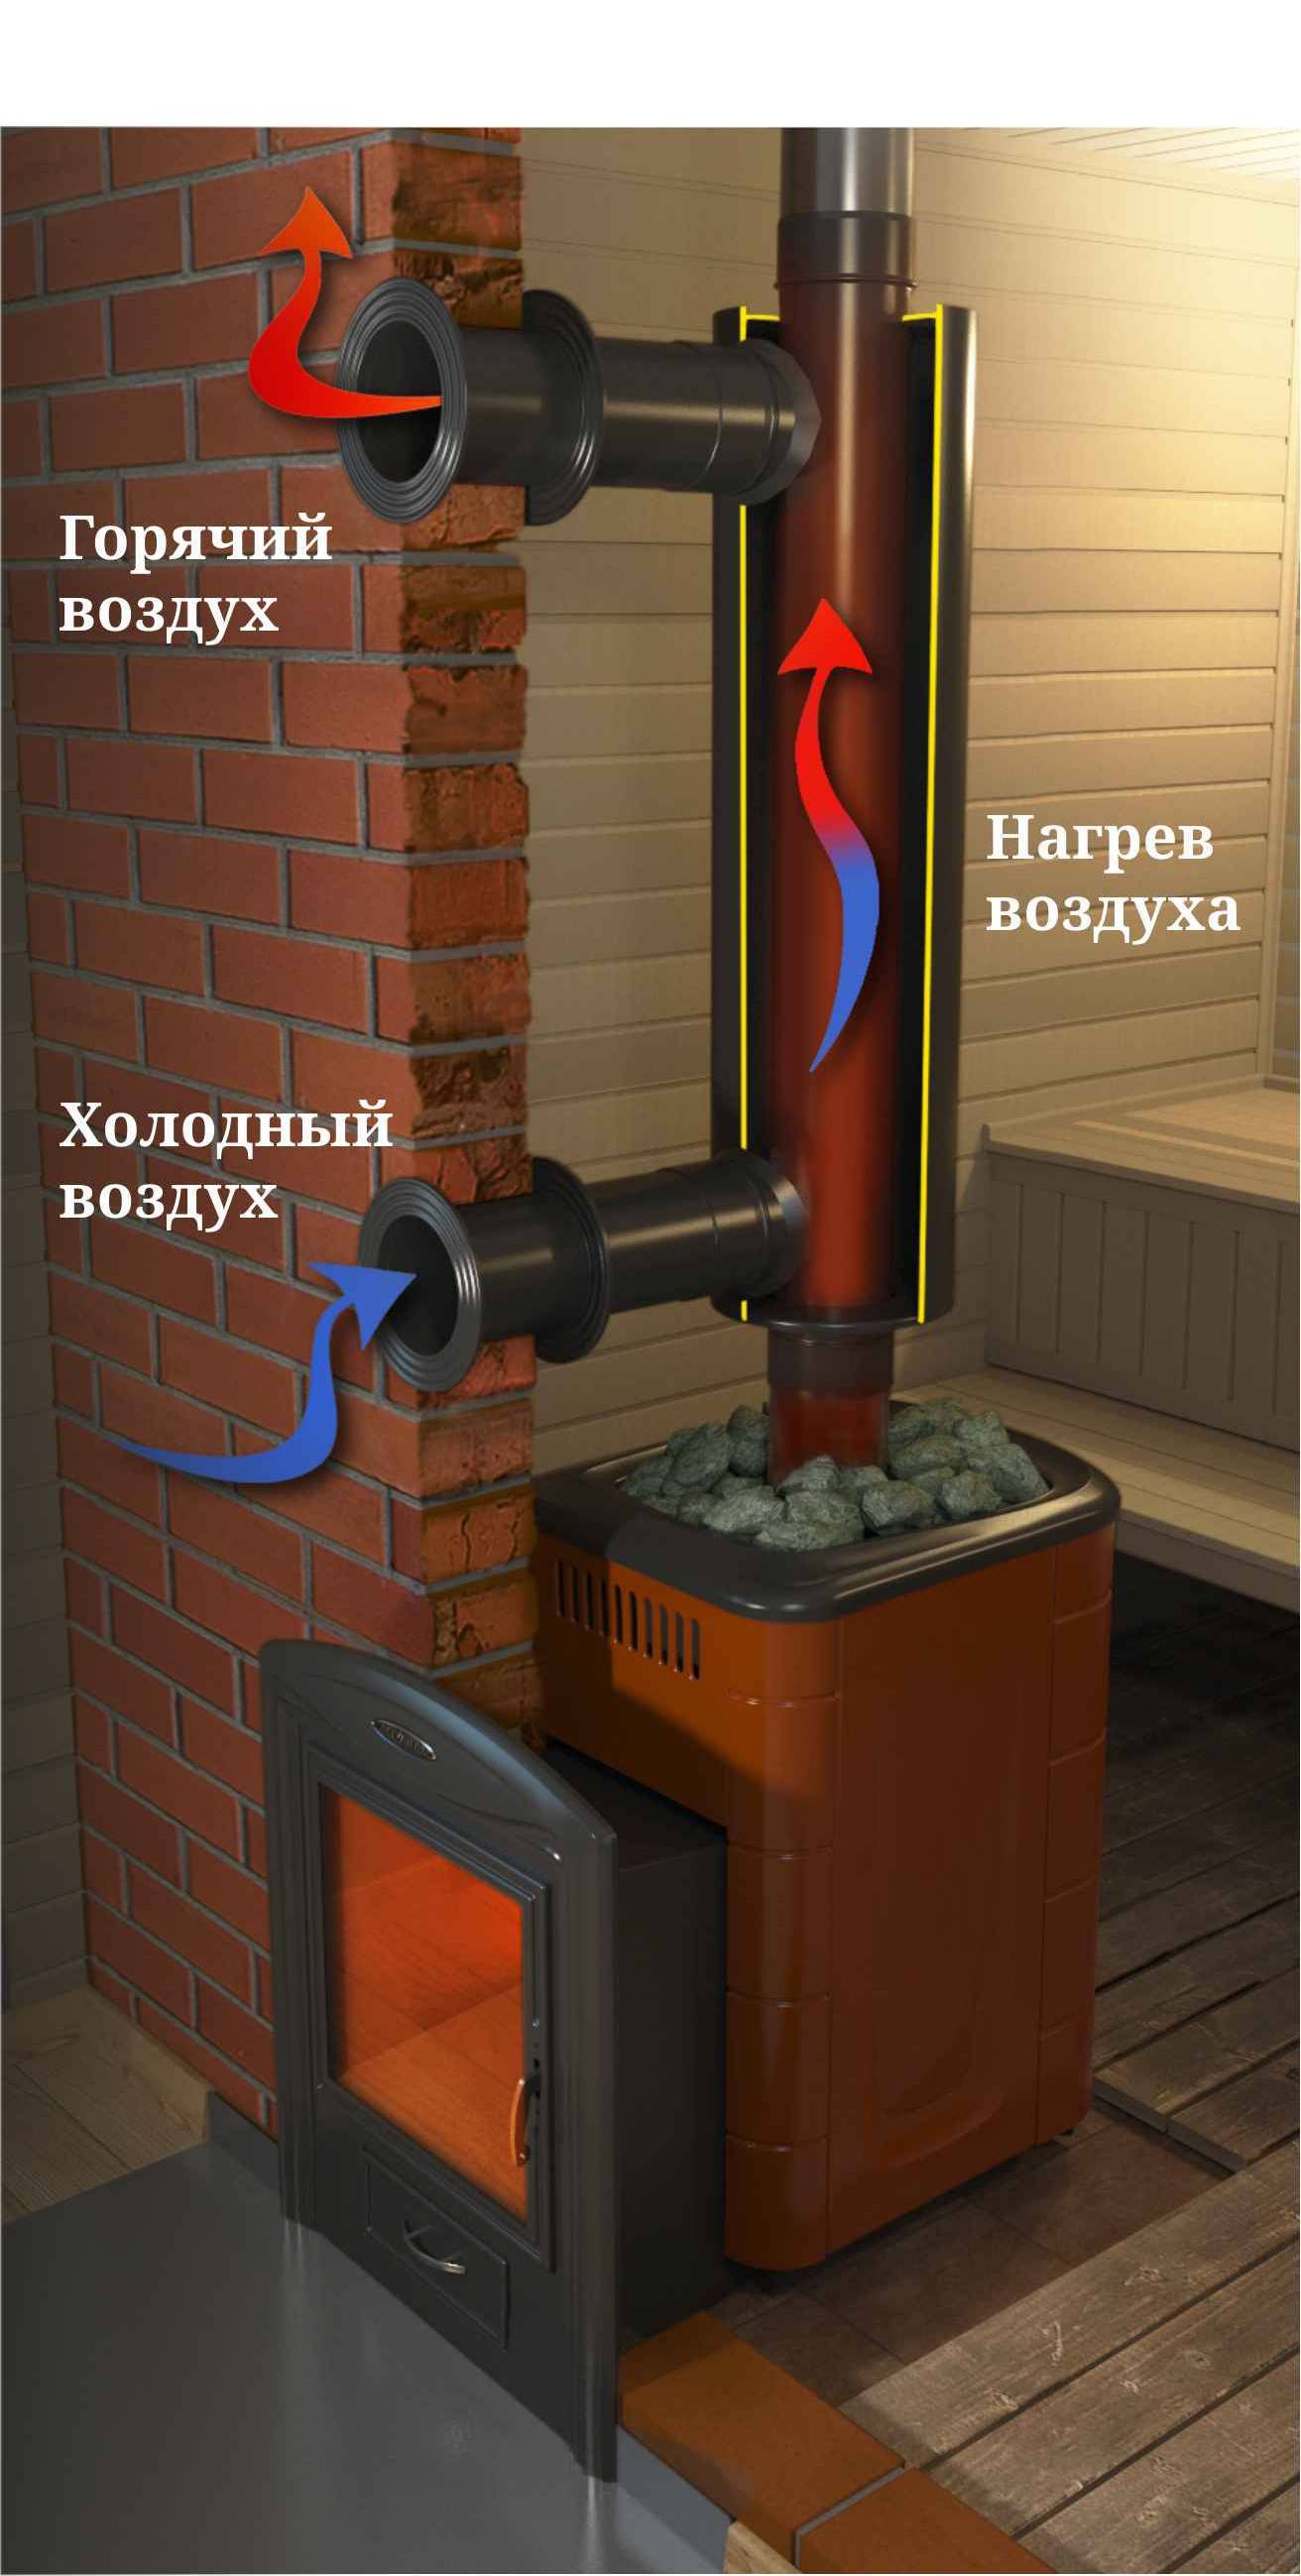 Отопление теплицы дровами, какую печь выбрать: центральную, с горизонтальным дымоходом, с водяным отоплением или длительного горения, подробнее на фото и видео